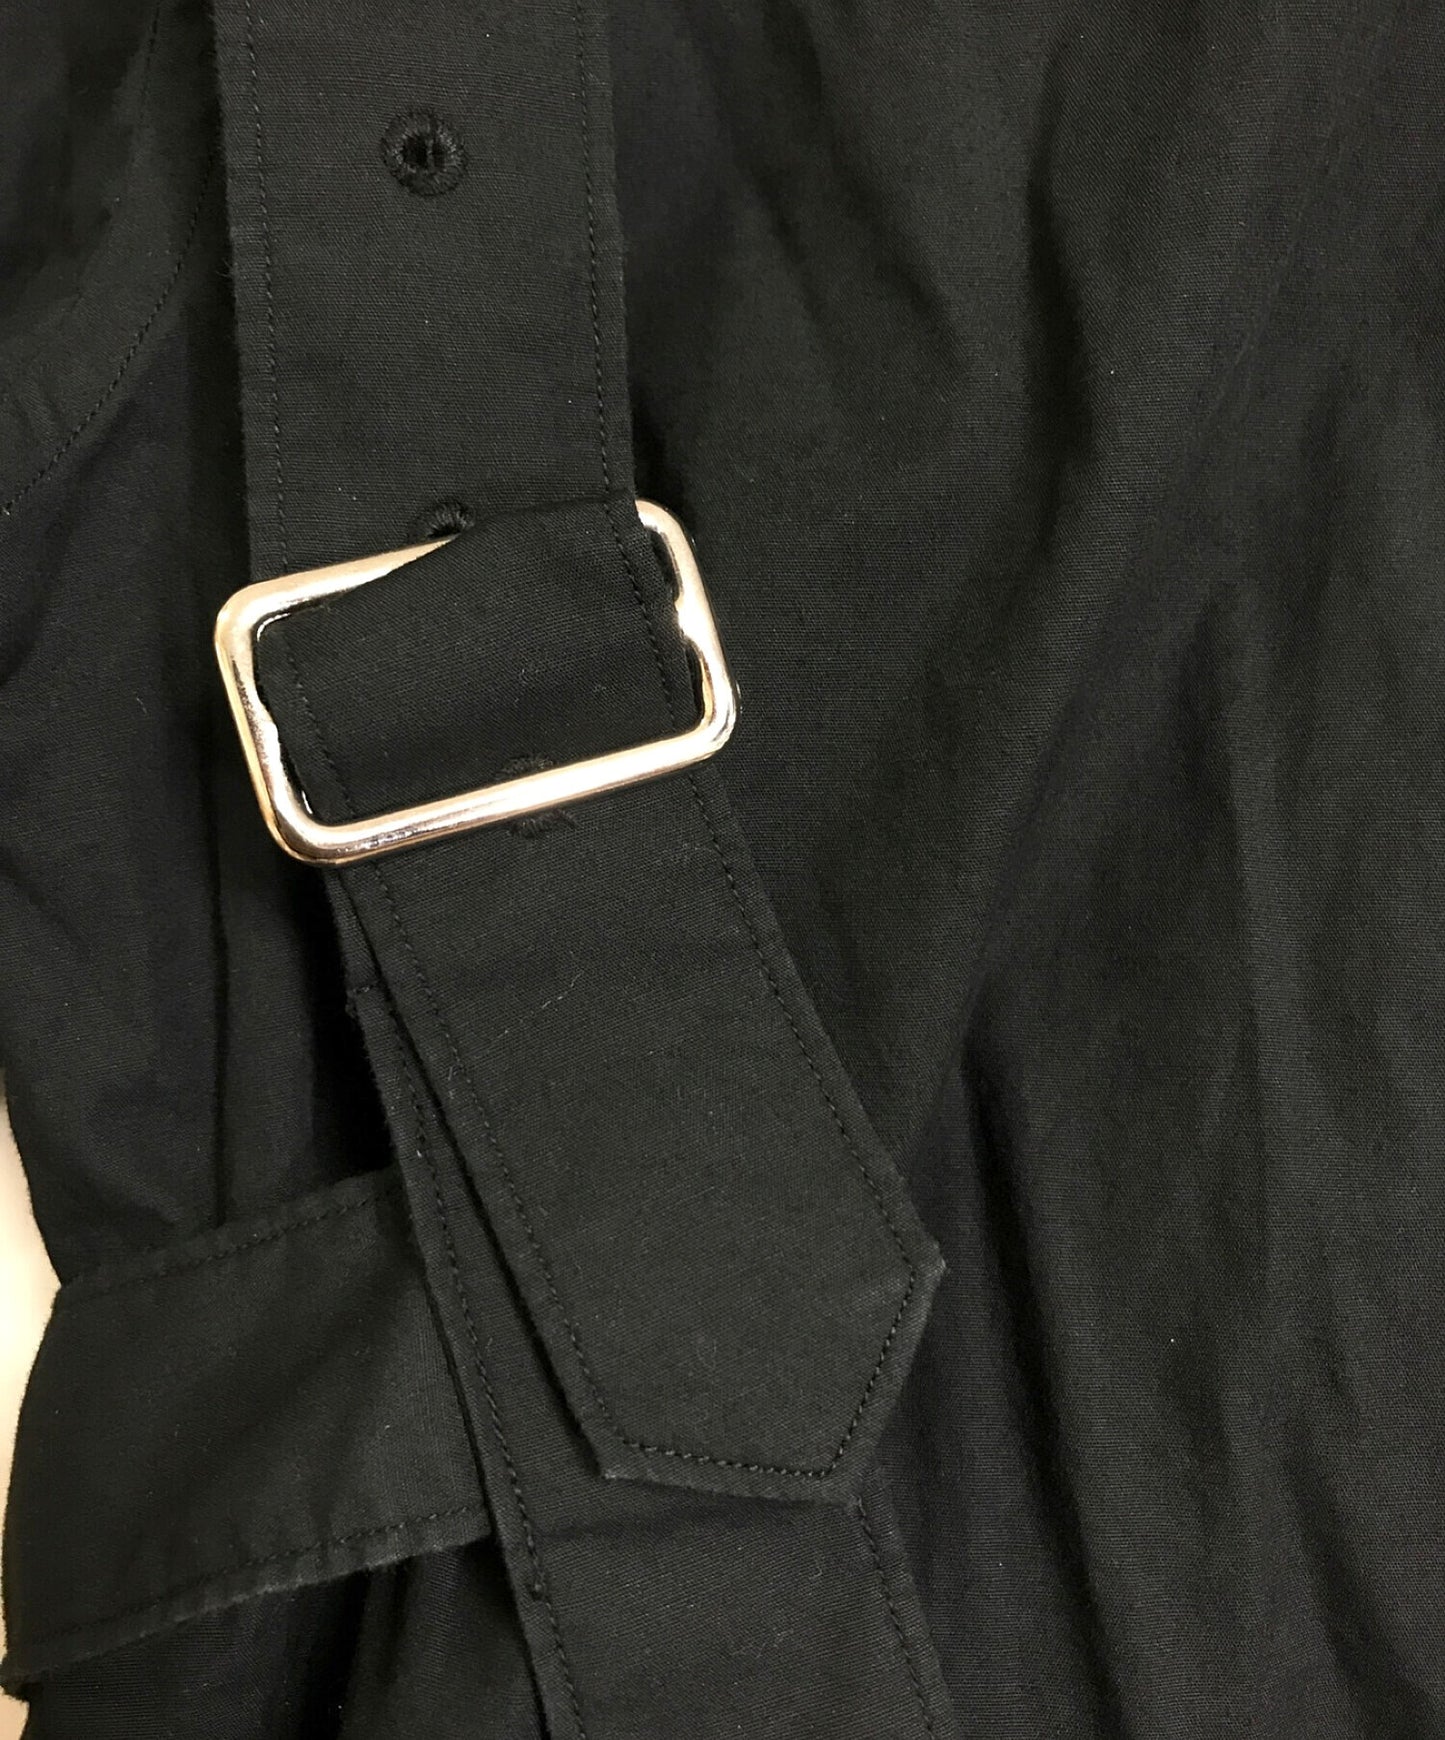 [Pre-owned] BLACK COMME des GARCONS vintage shirt 1A-B007